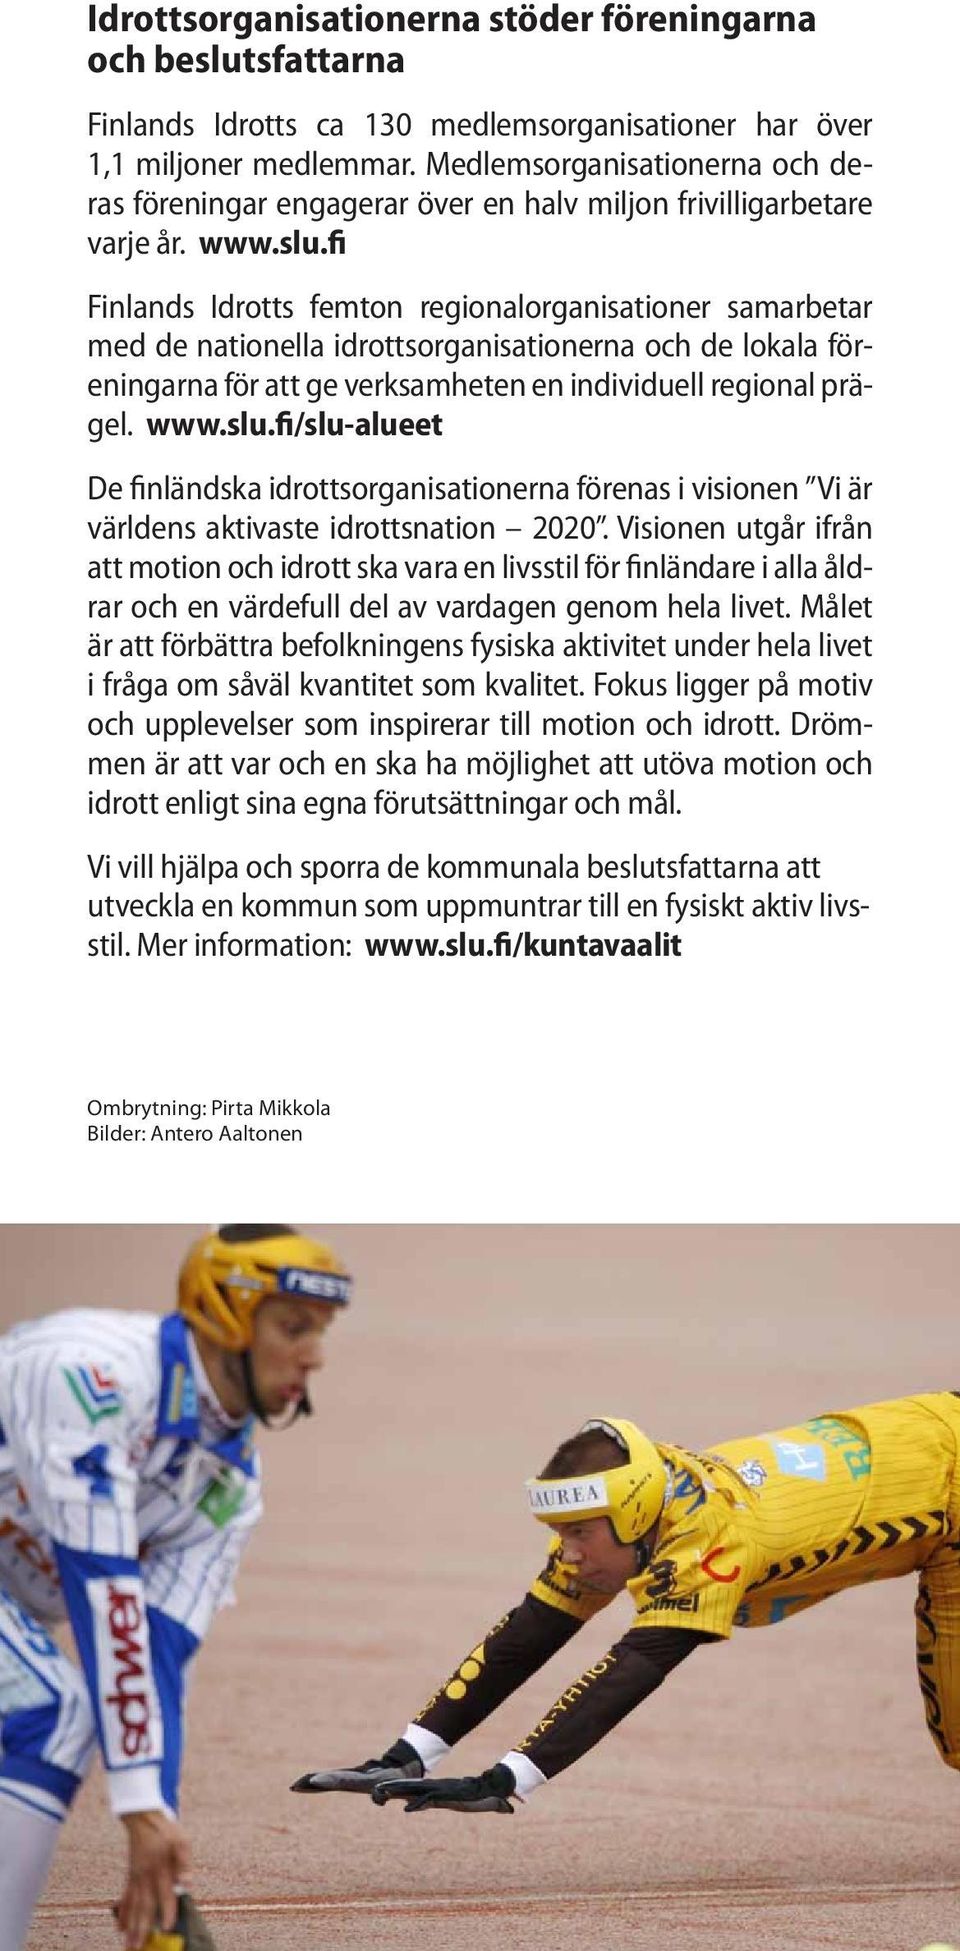 fi Finlands Idrotts femton regionalorganisationer samarbetar med de nationella idrottsorganisationerna och de lokala föreningarna för att ge verksamheten en individuell regional prägel. www.slu.